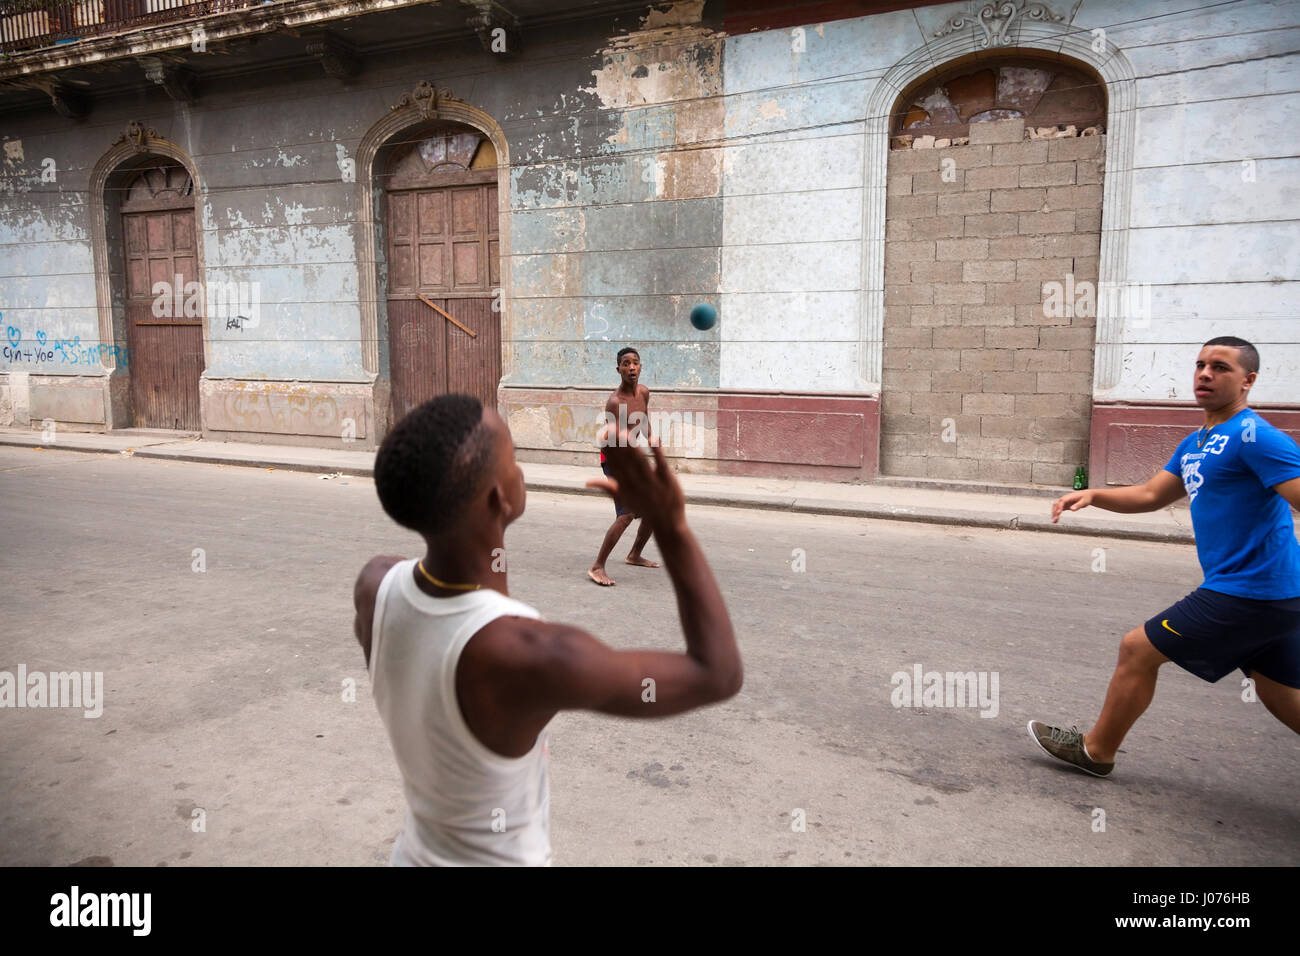 Los jóvenes cubanos jugando a Balonmano en la calle, en la Habana Vieja, Cuba. Foto de stock